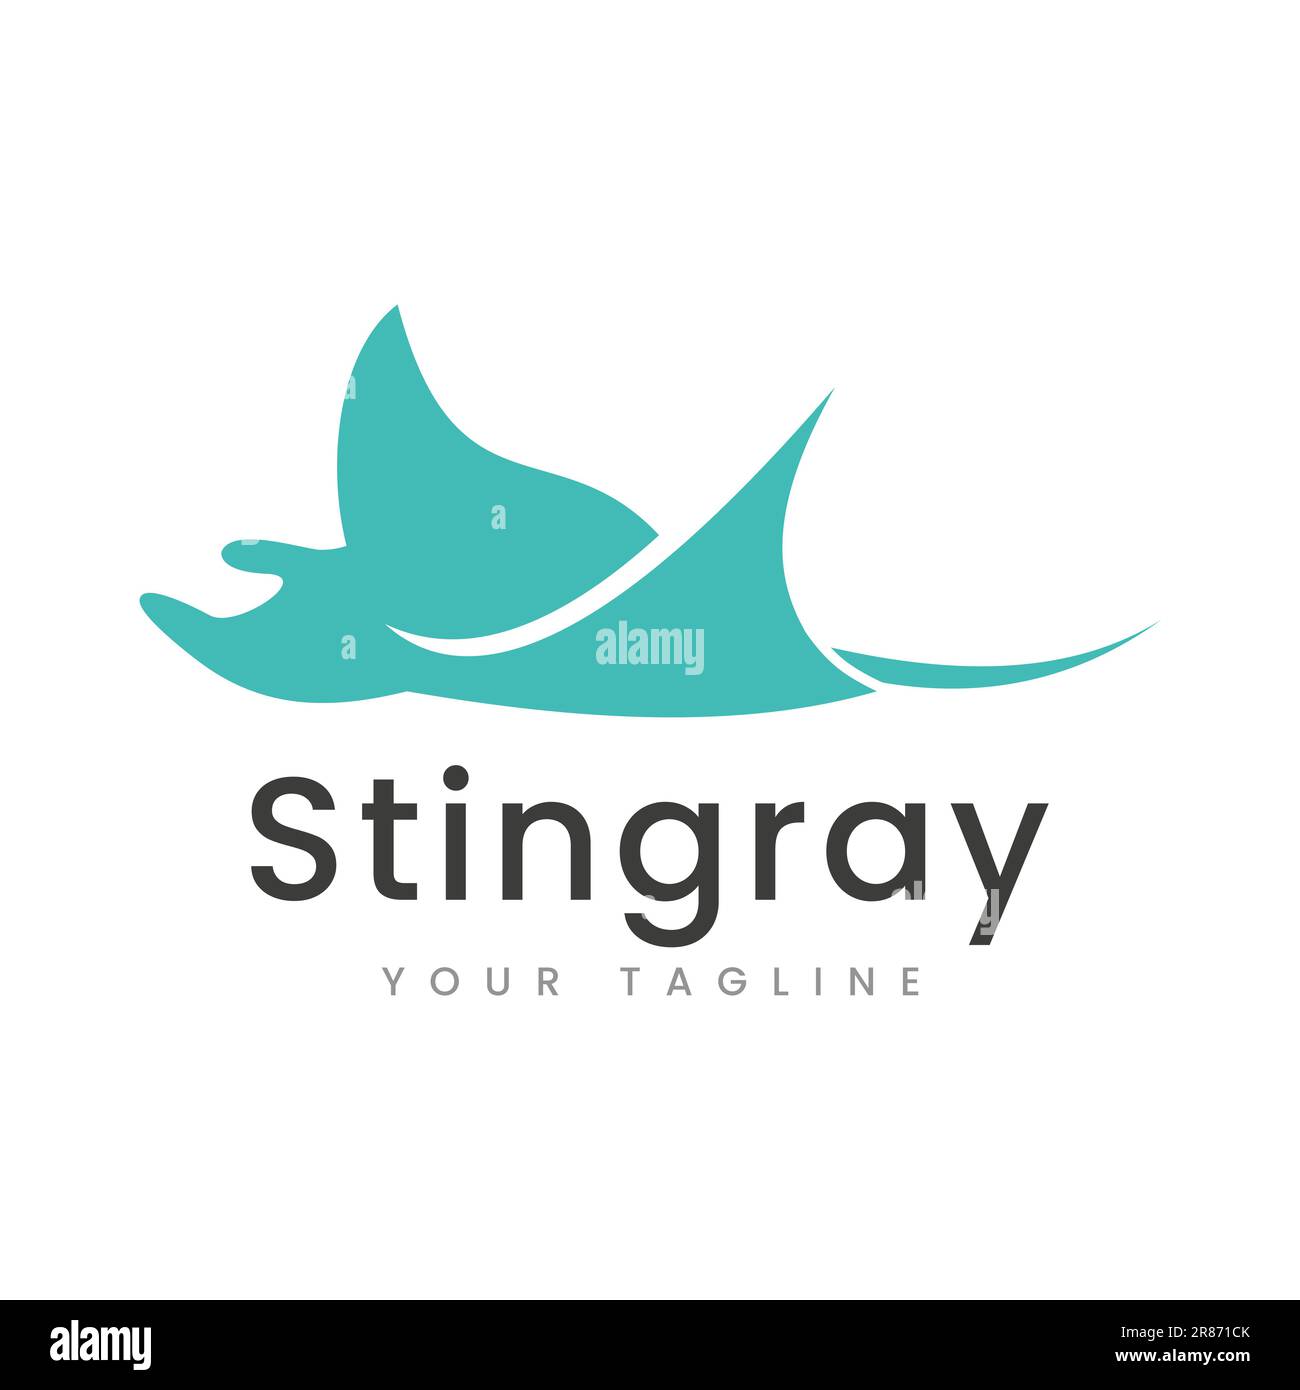 Illustration de Stingray logo Design modèle vectoriel l'image de silhouette de Stingray peut être utilisée pour le logo d'un restaurant Illustration de Vecteur